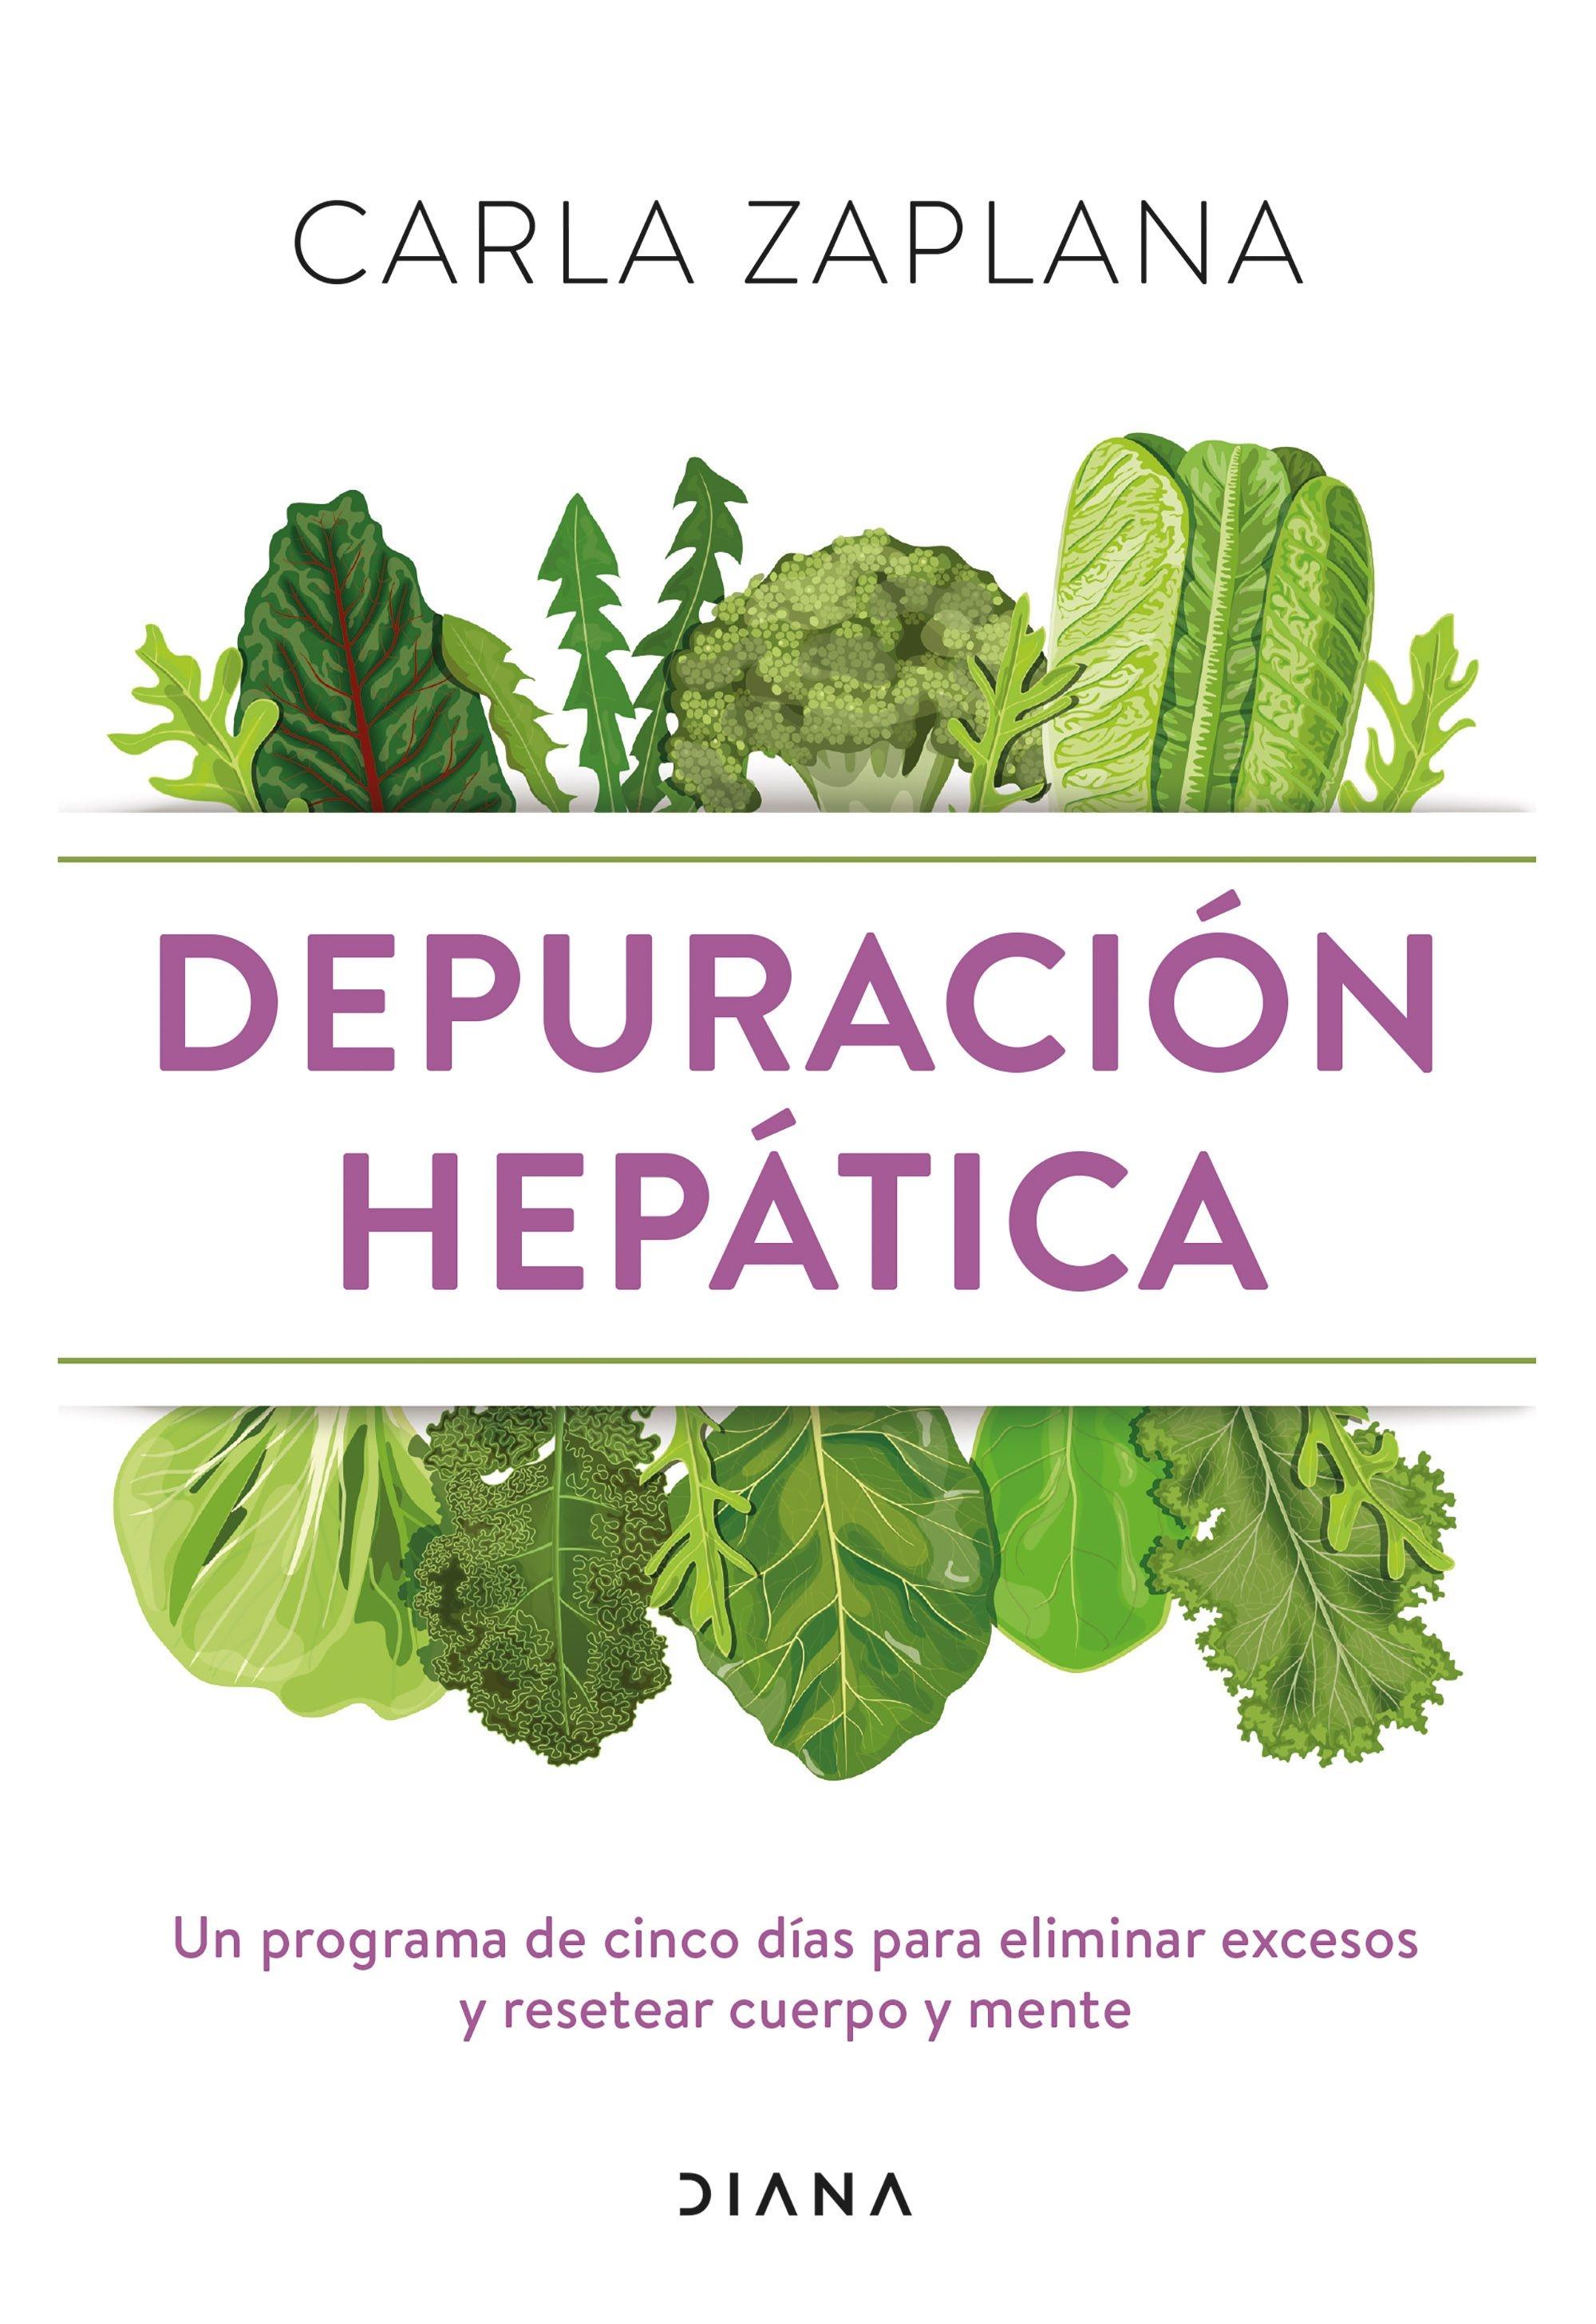 Depuración hepática "Un programa de cinco días para eliminar excesos y resetear cuerpo y ment"